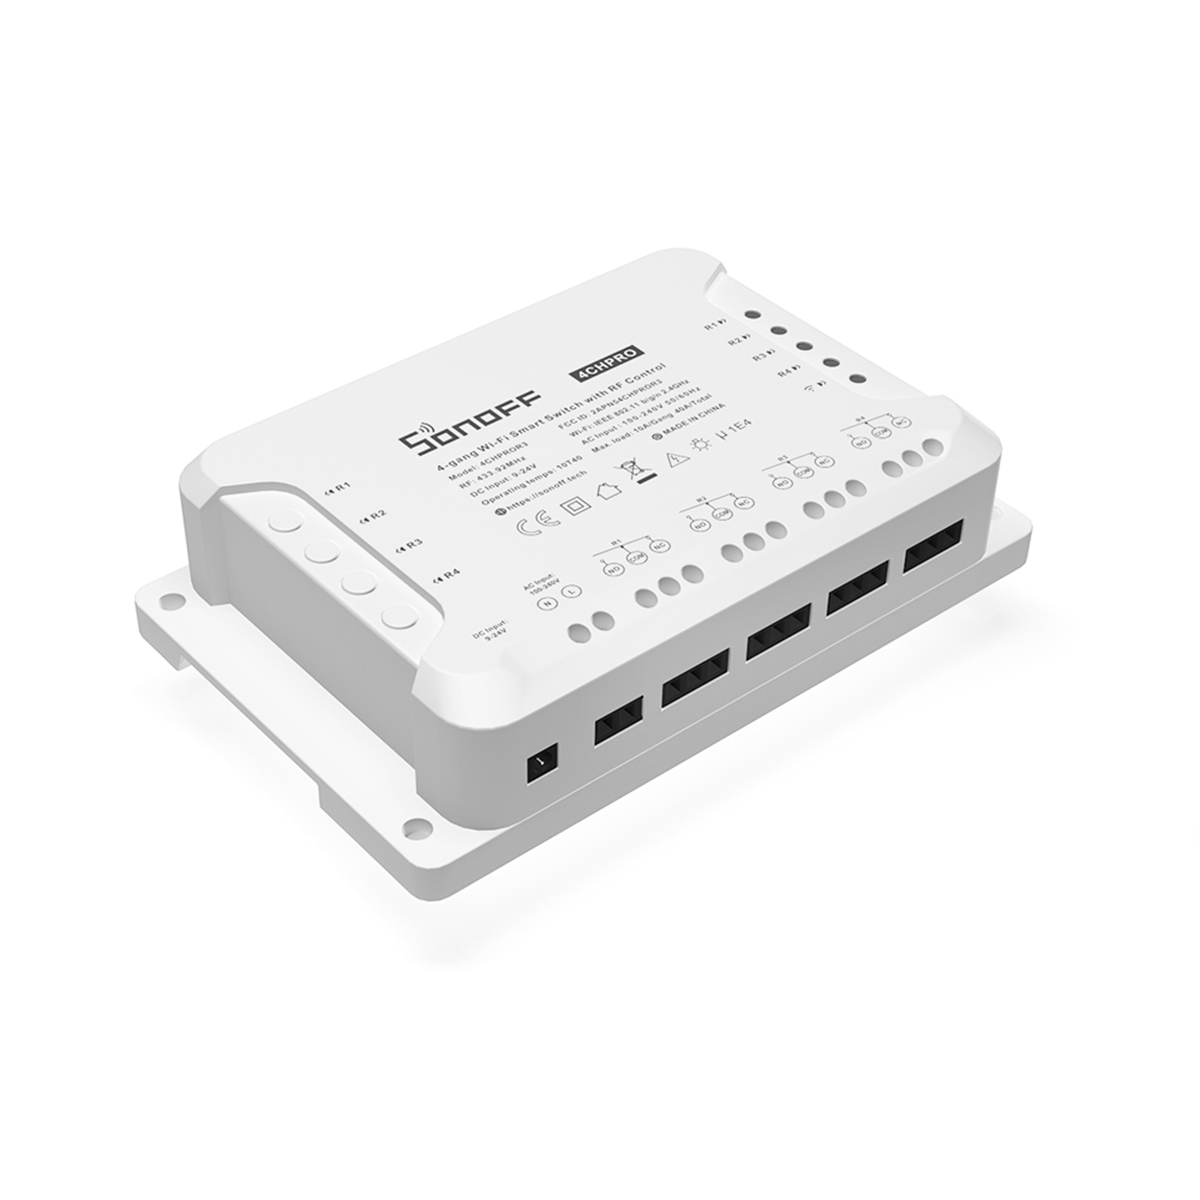 Ενδιάμεσος Διακόπτης 4CH PRO R3  με Wi-Fi και RF σε Λευκό Χρώμα Sonoff  80011 image